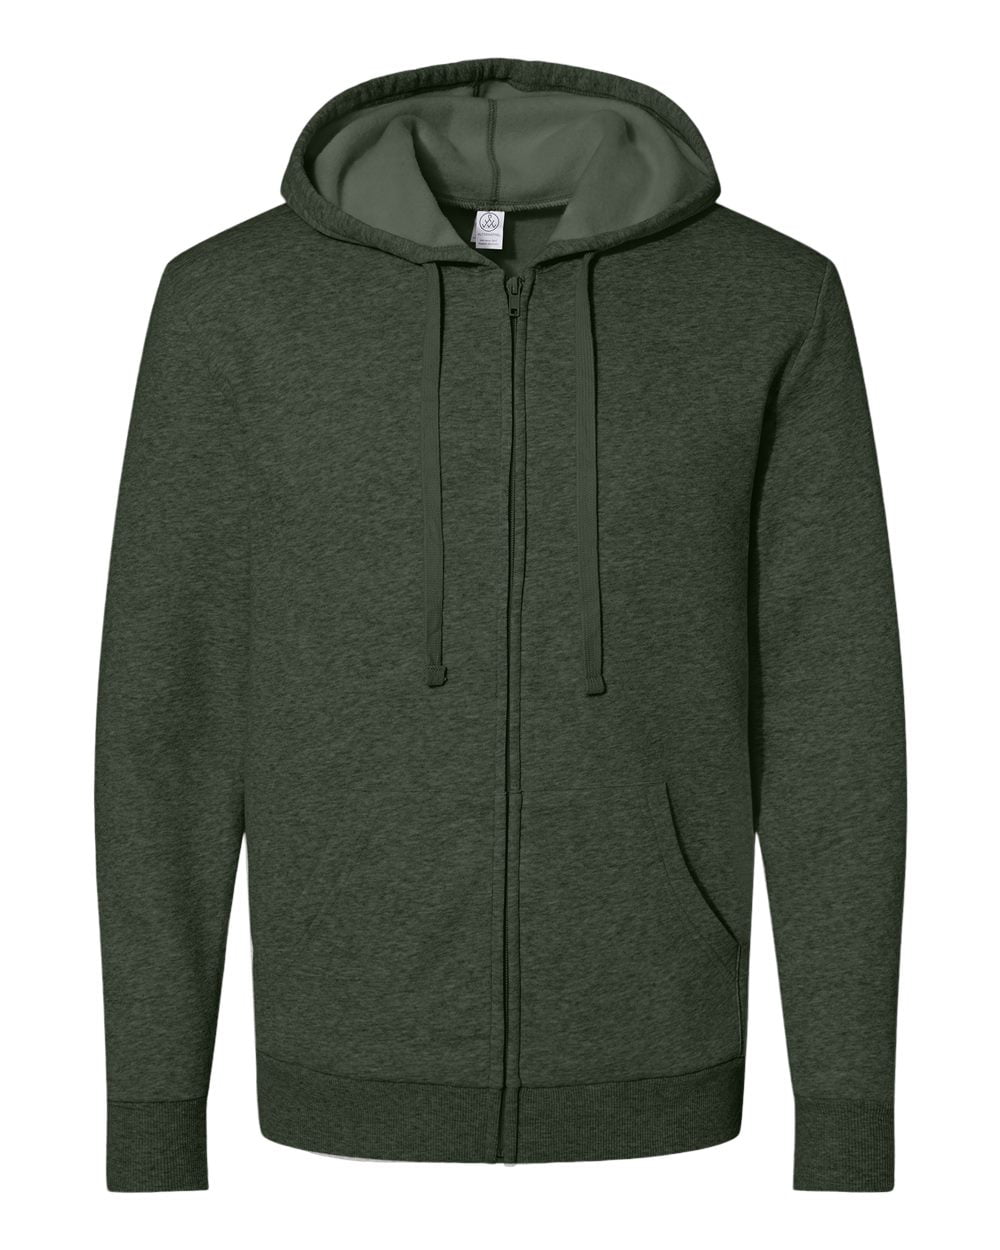 Alternative Eco-Cozy Fleece Zip Hoodie Size up to 3XL - Walmart.com